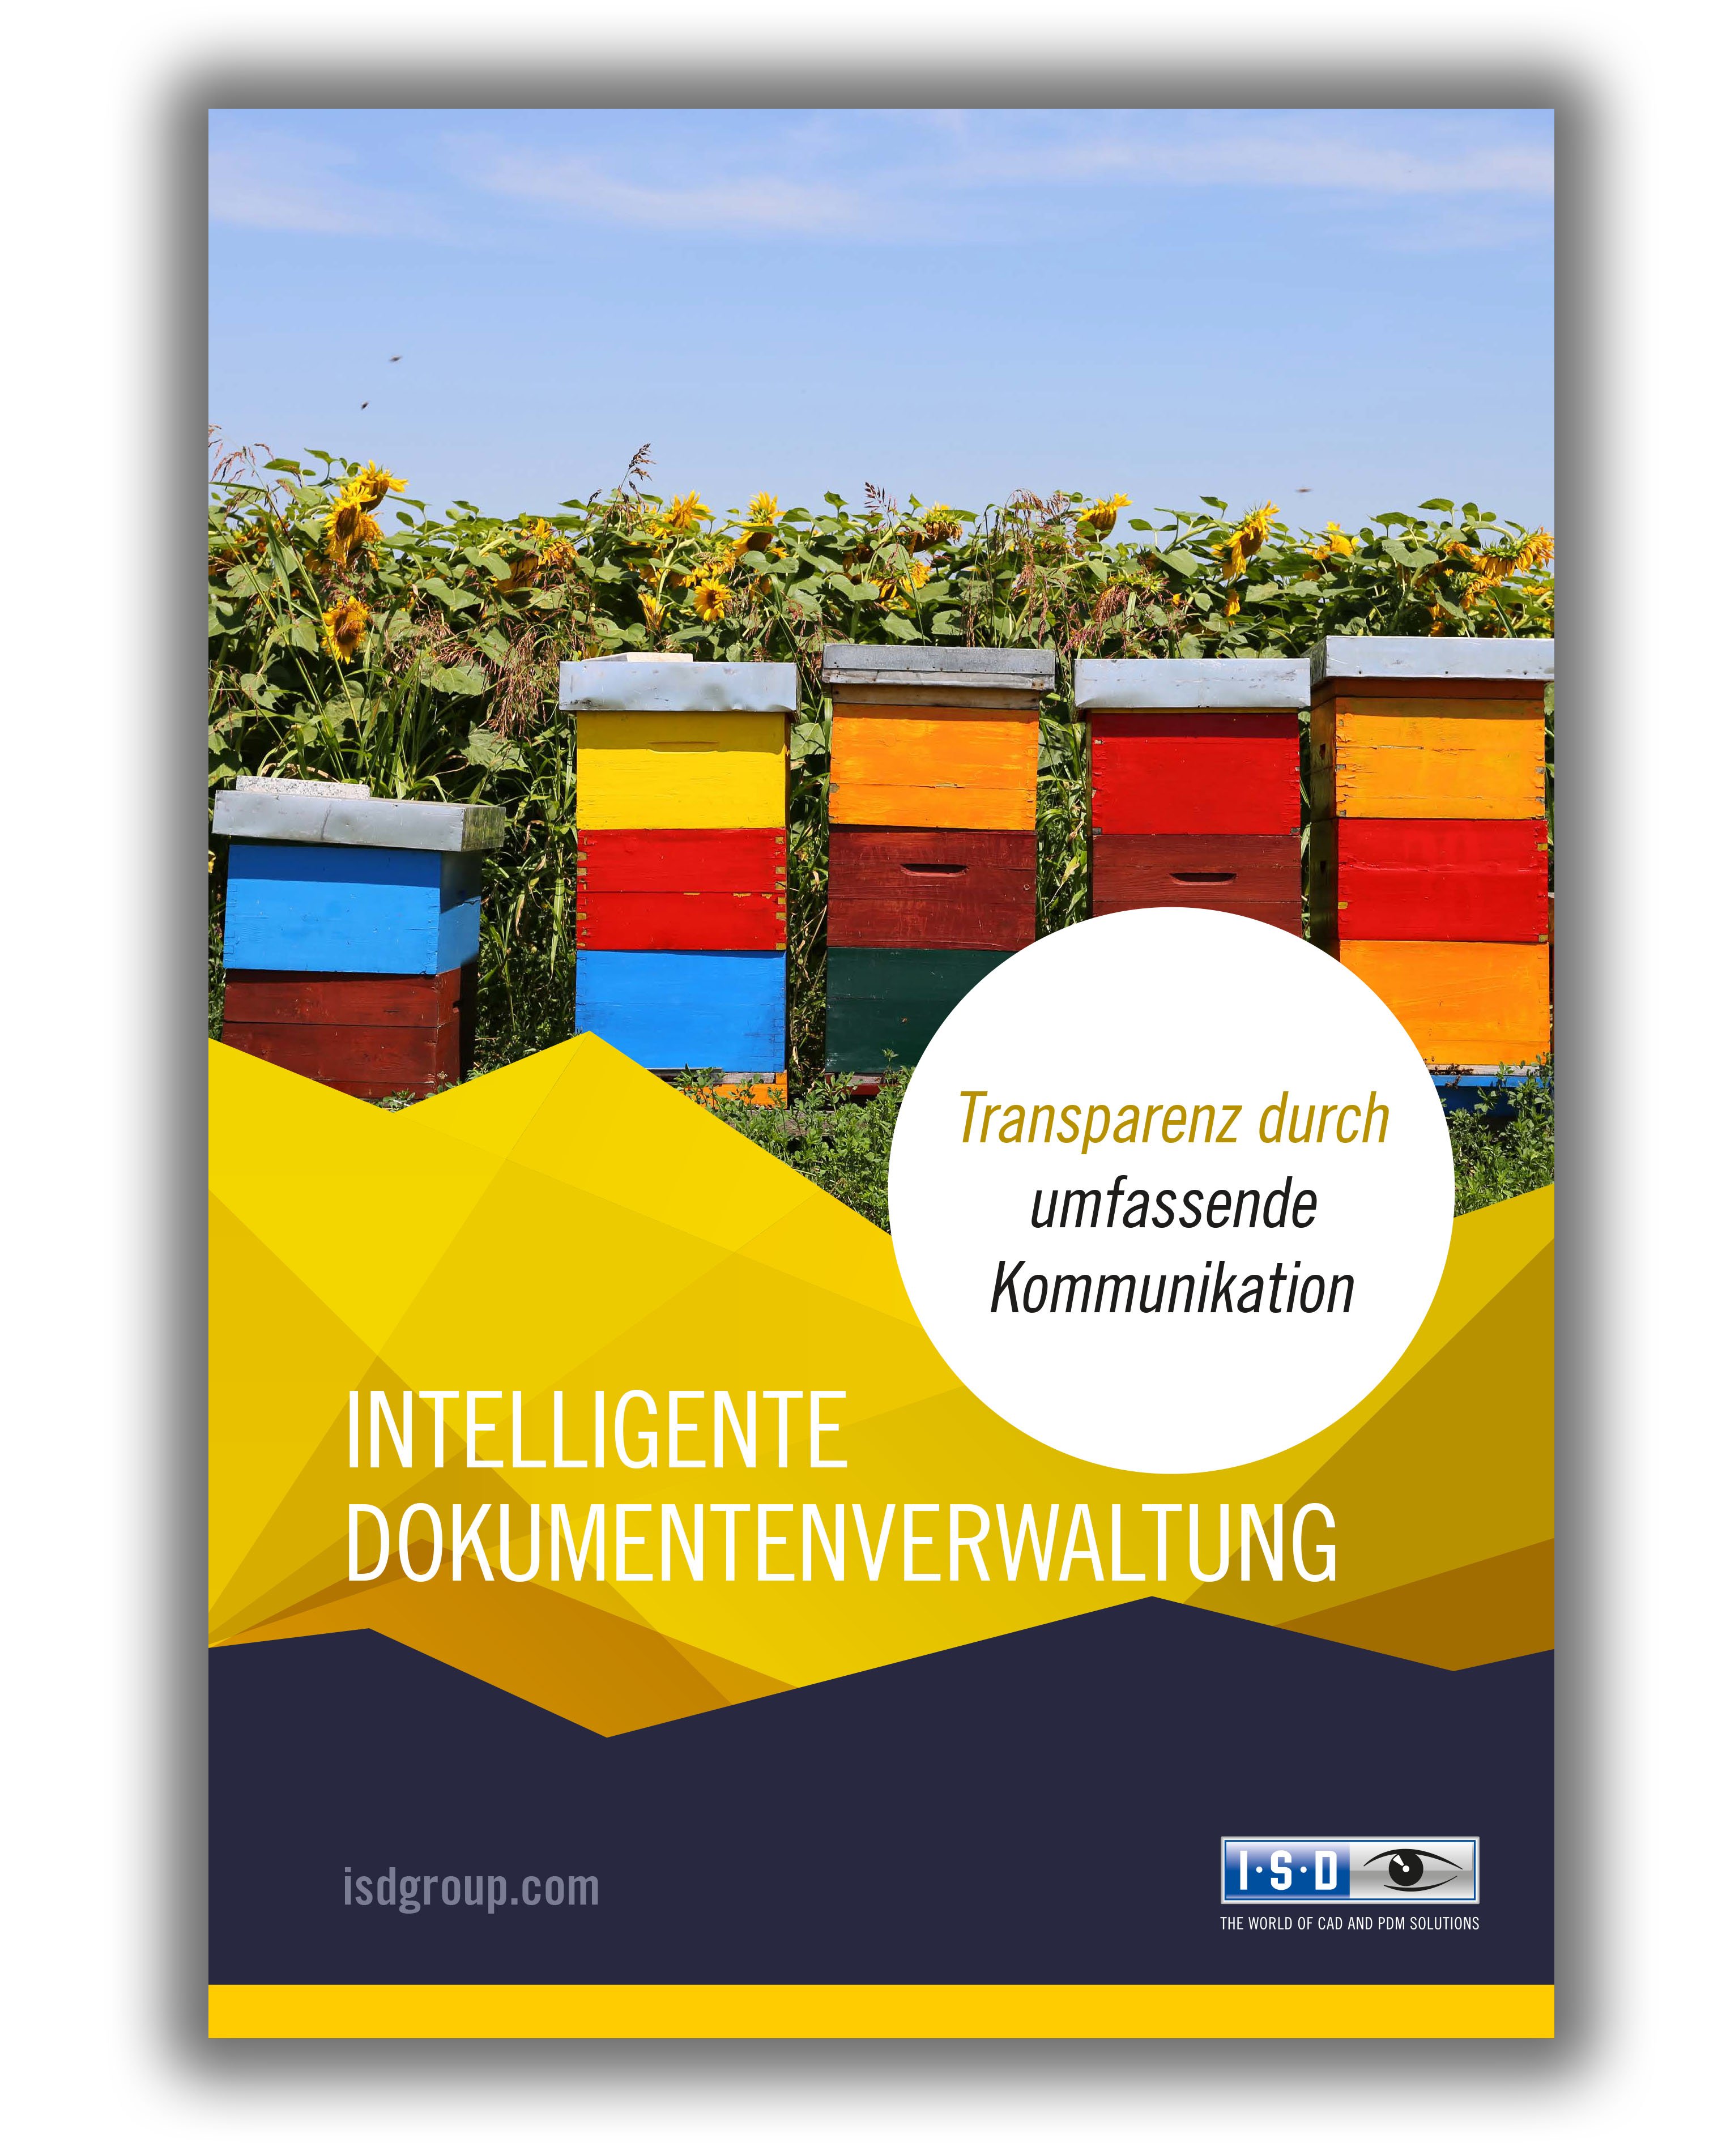 isd-pdm-intelligente-dokumentenverwaltung-1